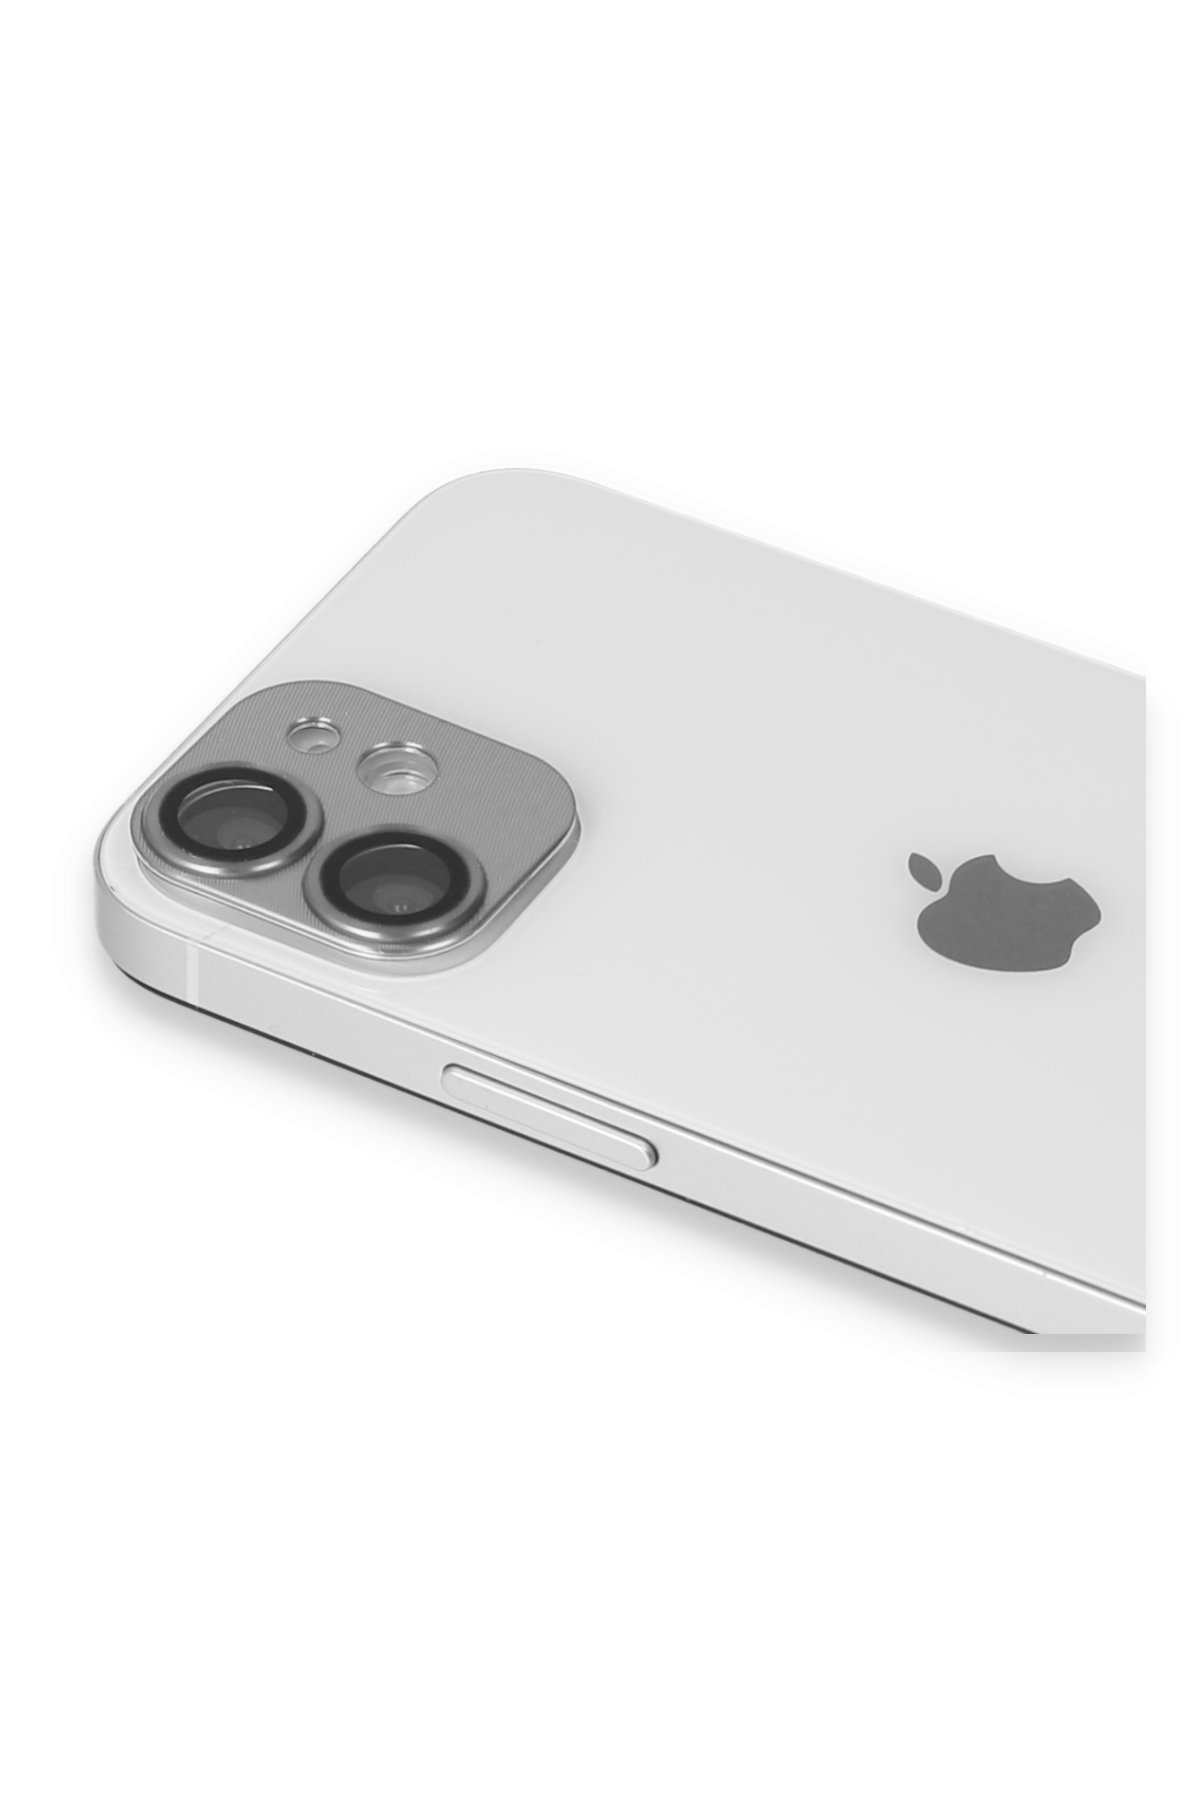 Newface iPhone 11 Kılıf Coco Karbon Silikon - Beyaz